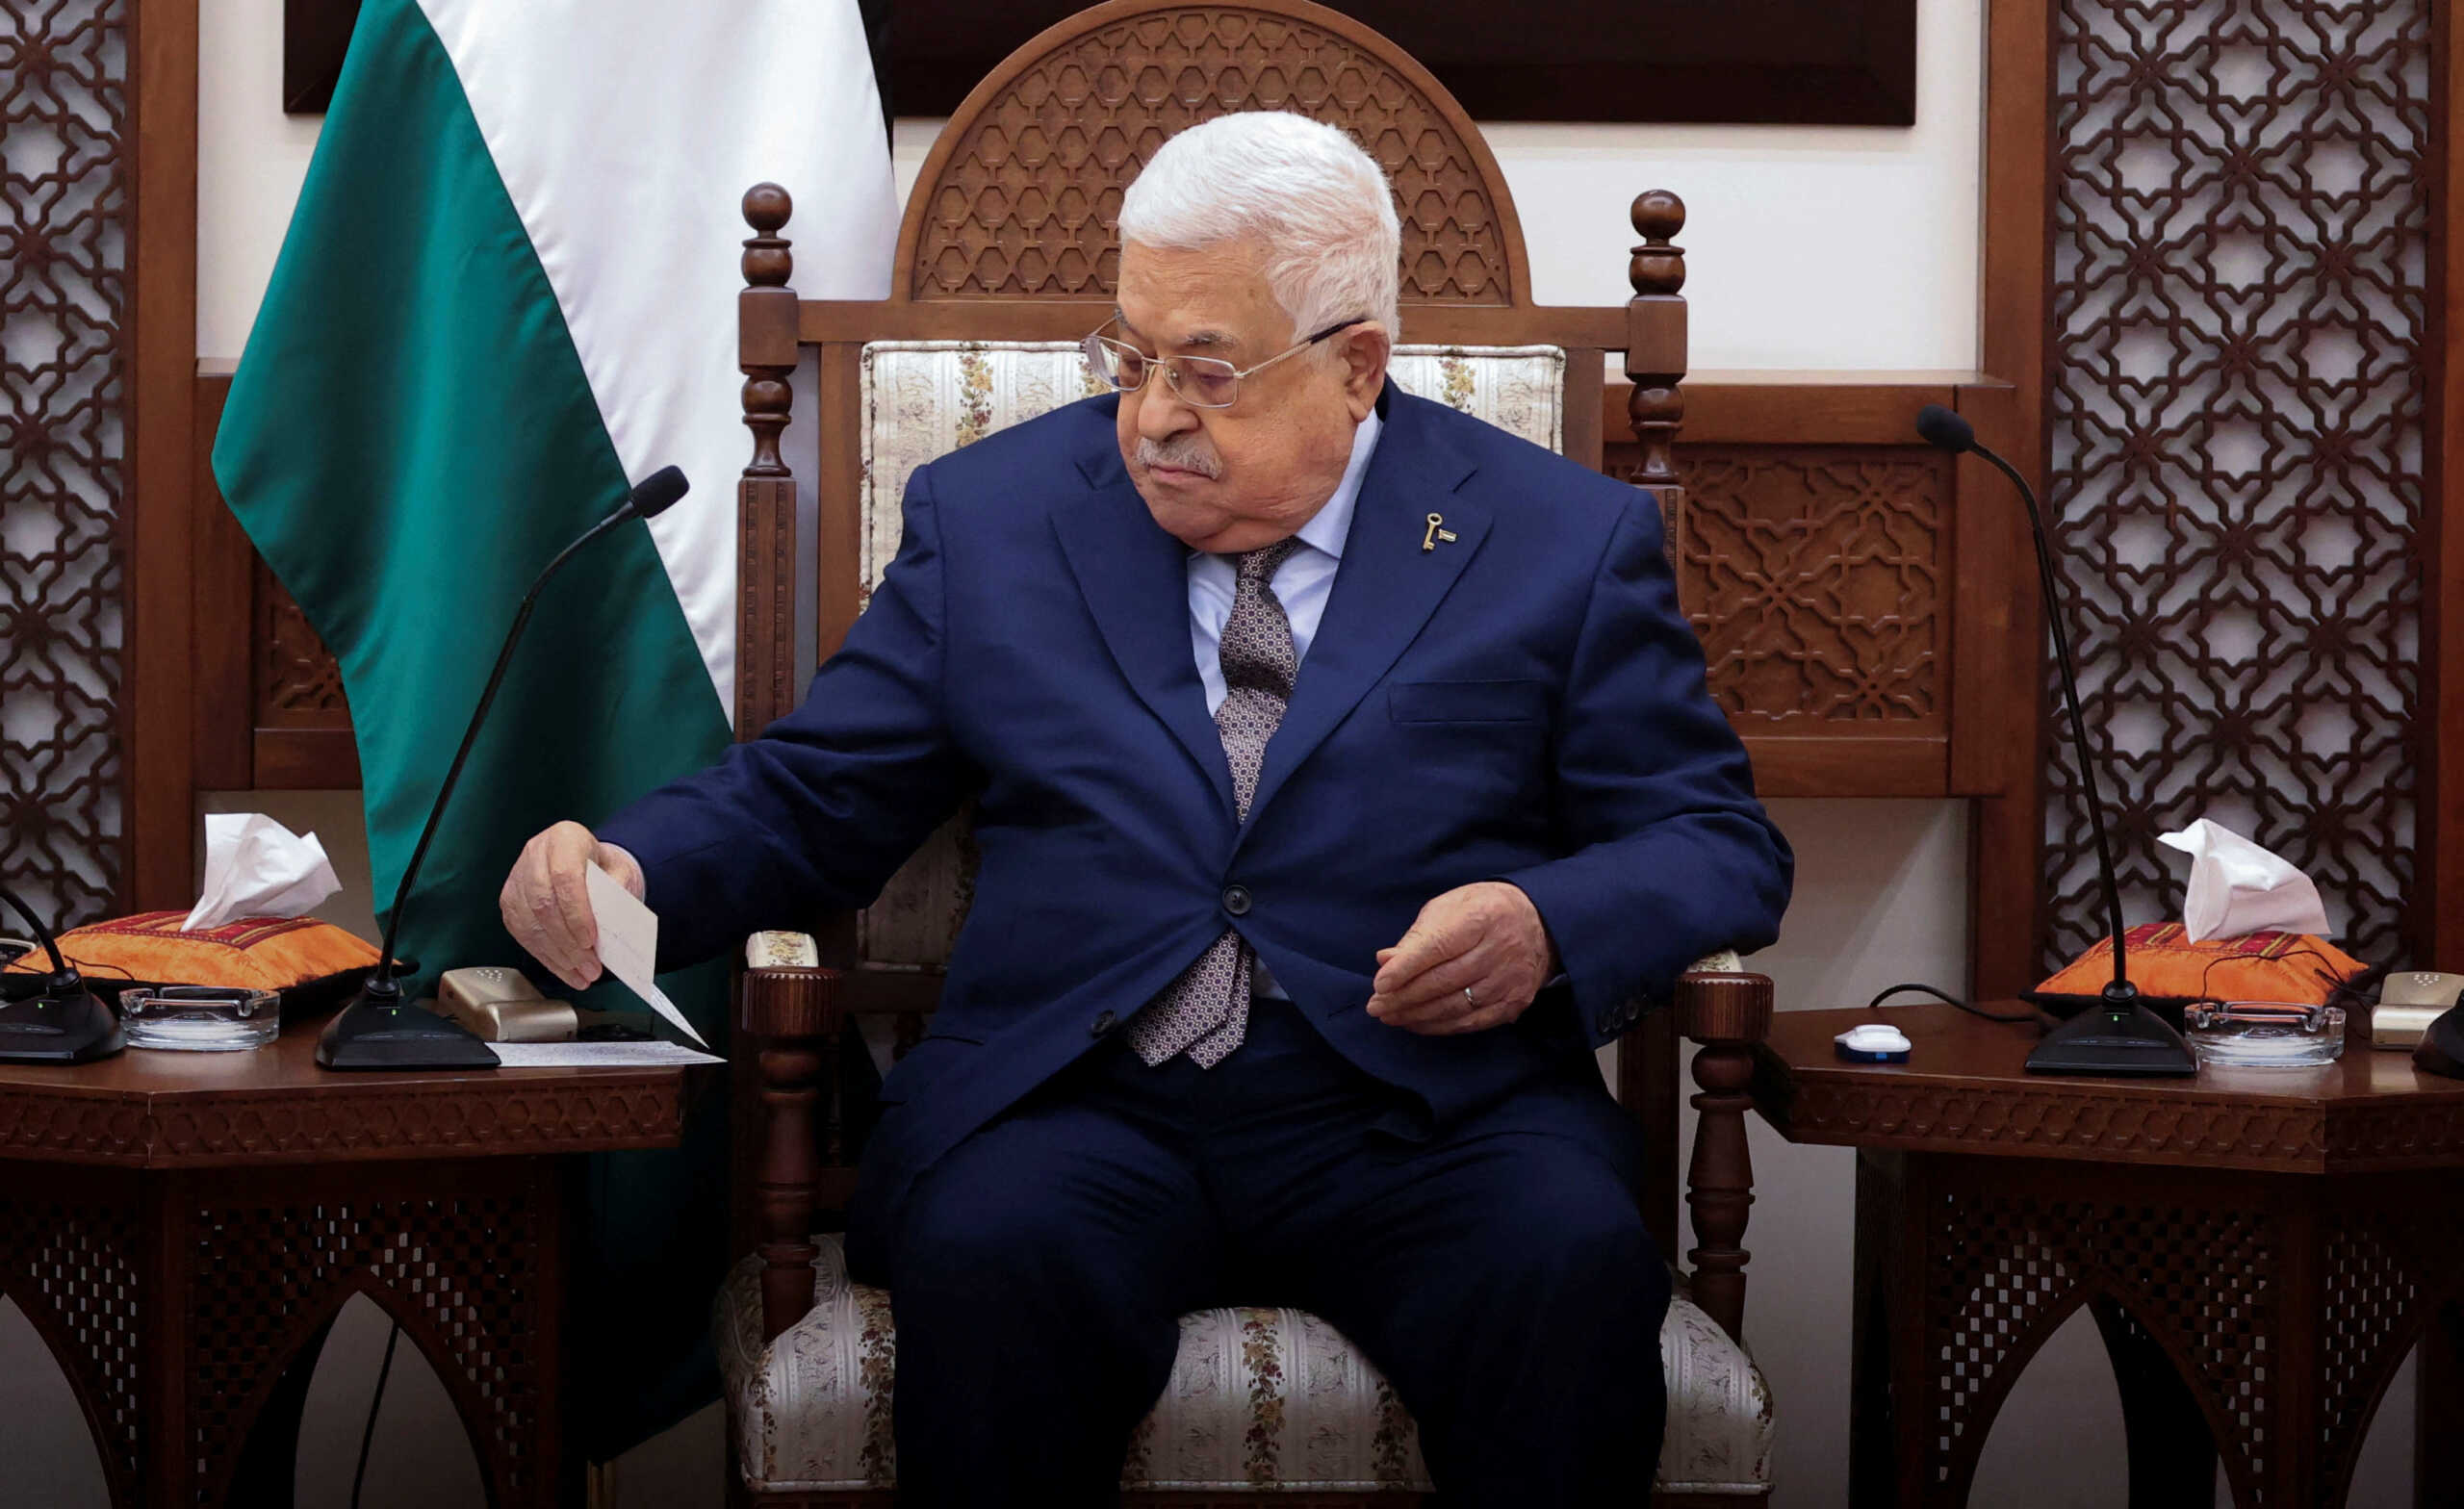 Μέση Ανατολή: Ο πρόεδρος της Παλαιστινιακής Αρχής ζητάει παρέμβαση των ΗΠΑ για να σταματήσουν οι ισραηλινές επιθέσεις